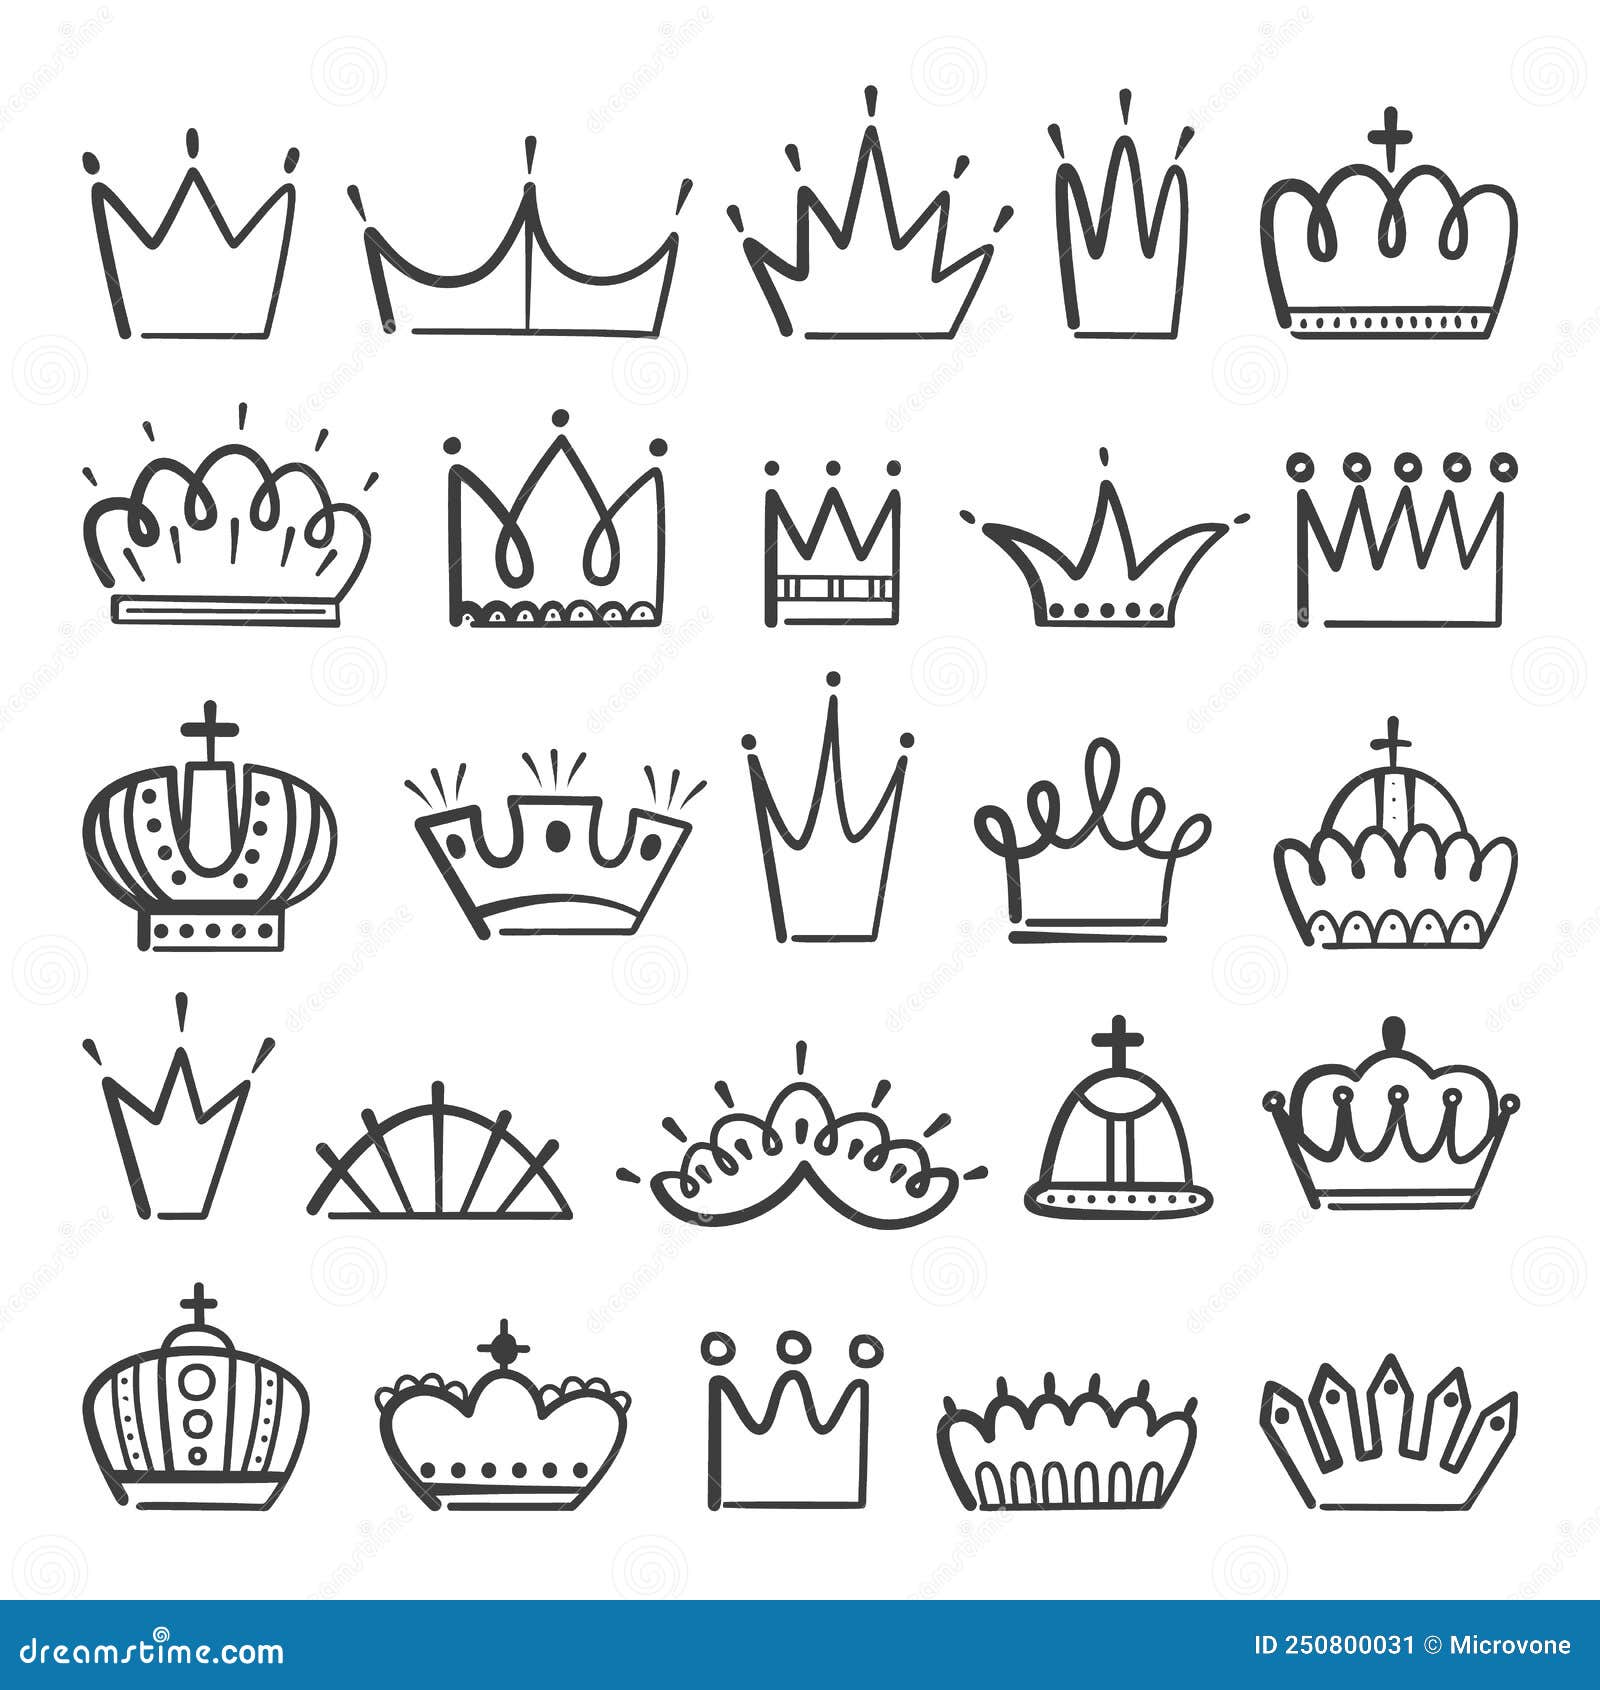 символы короны для пубг фото 59